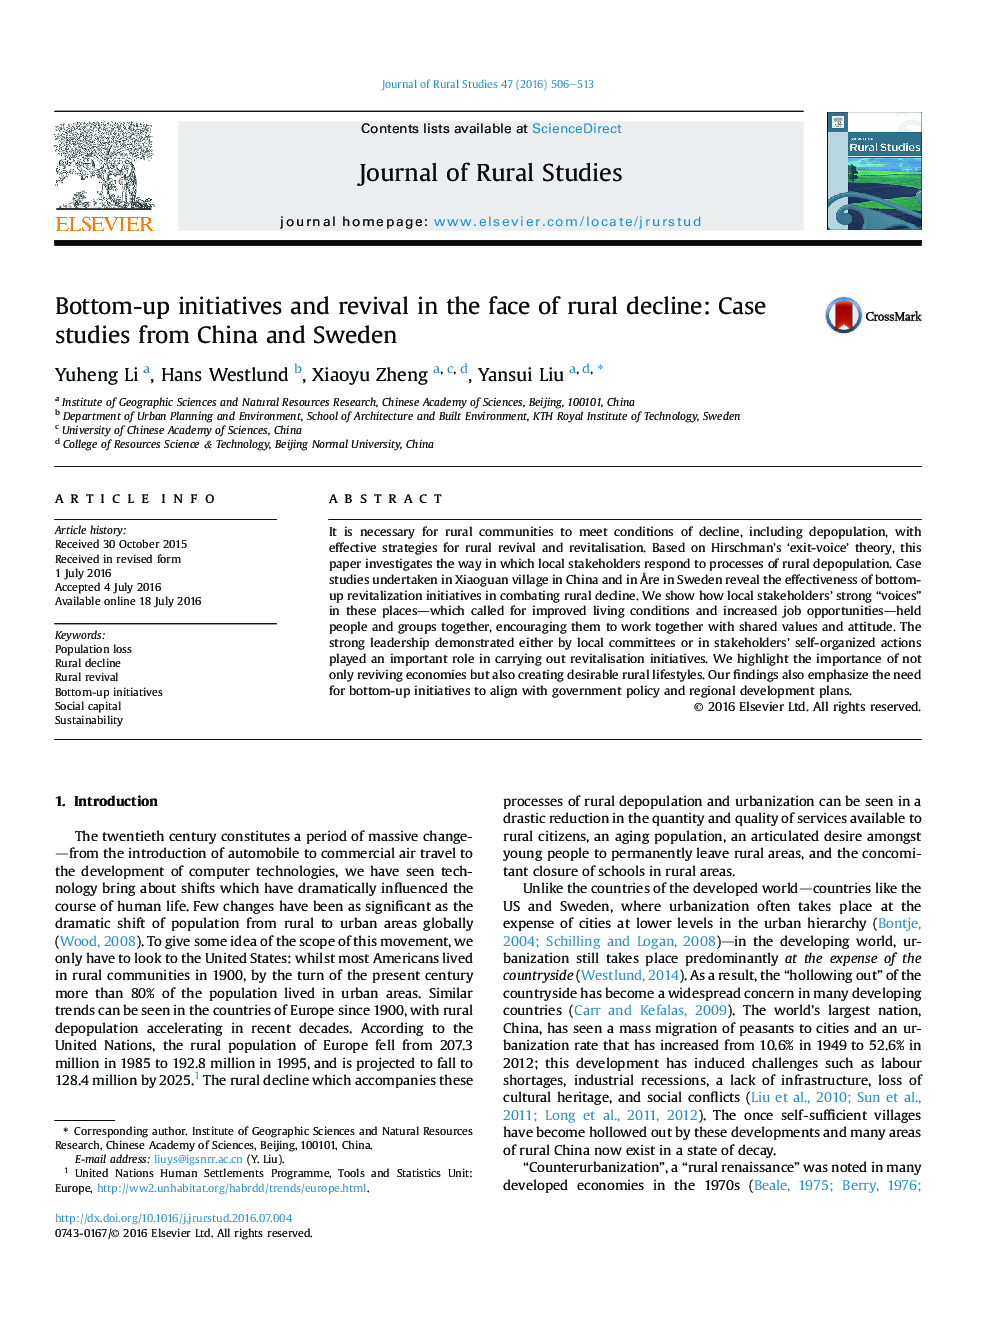 طرح های پایین به بالا و احیا در مواجهه با کاهش روستایی: مطالعات موردی از چین و سوئد